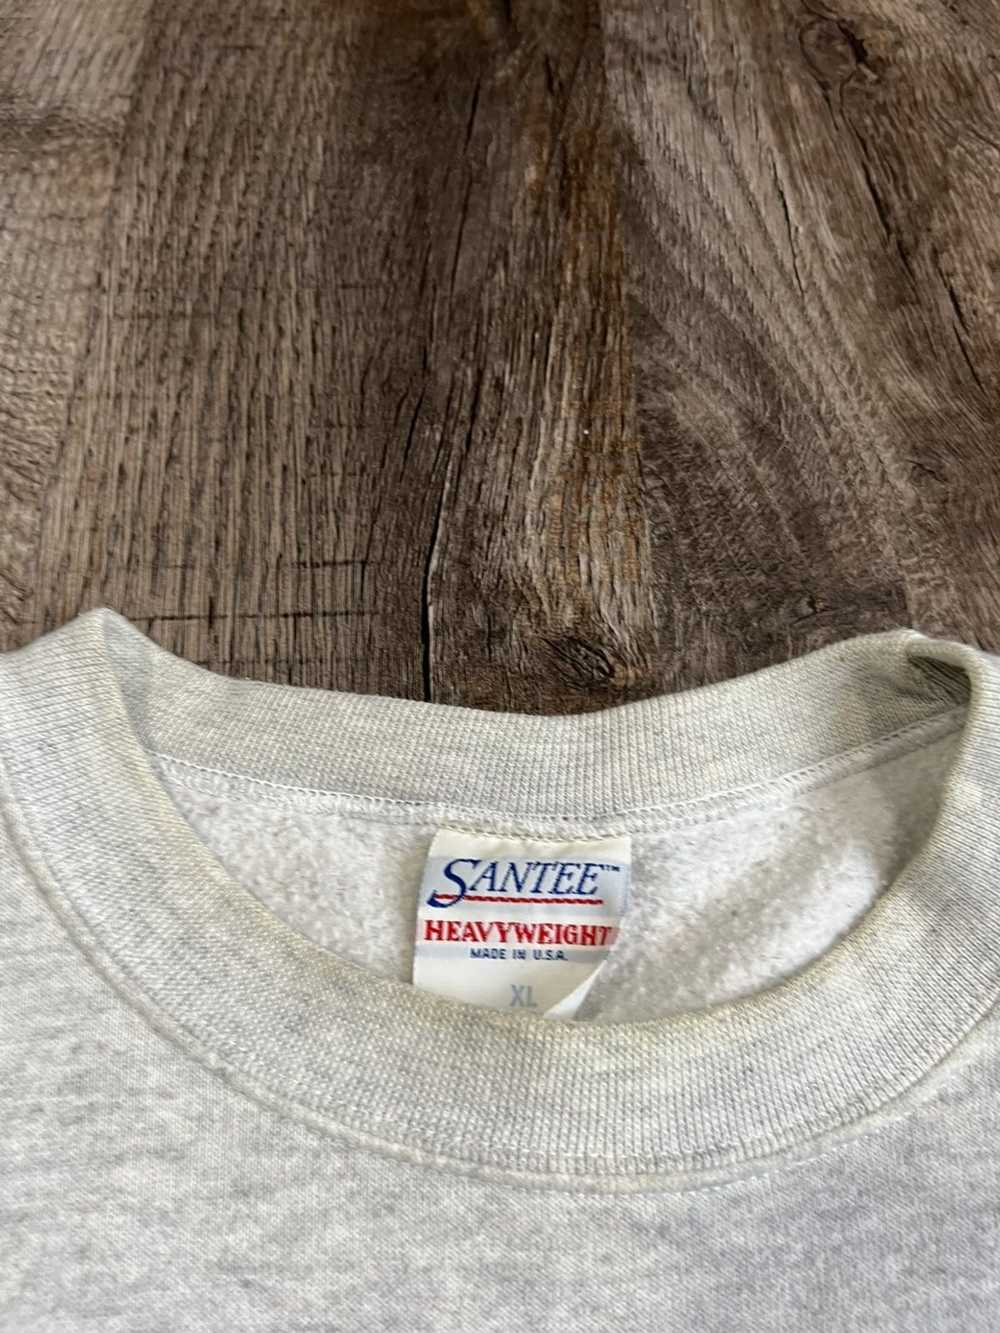 Vintage Vintage Minnesota Vikings Sweatshirt - image 4